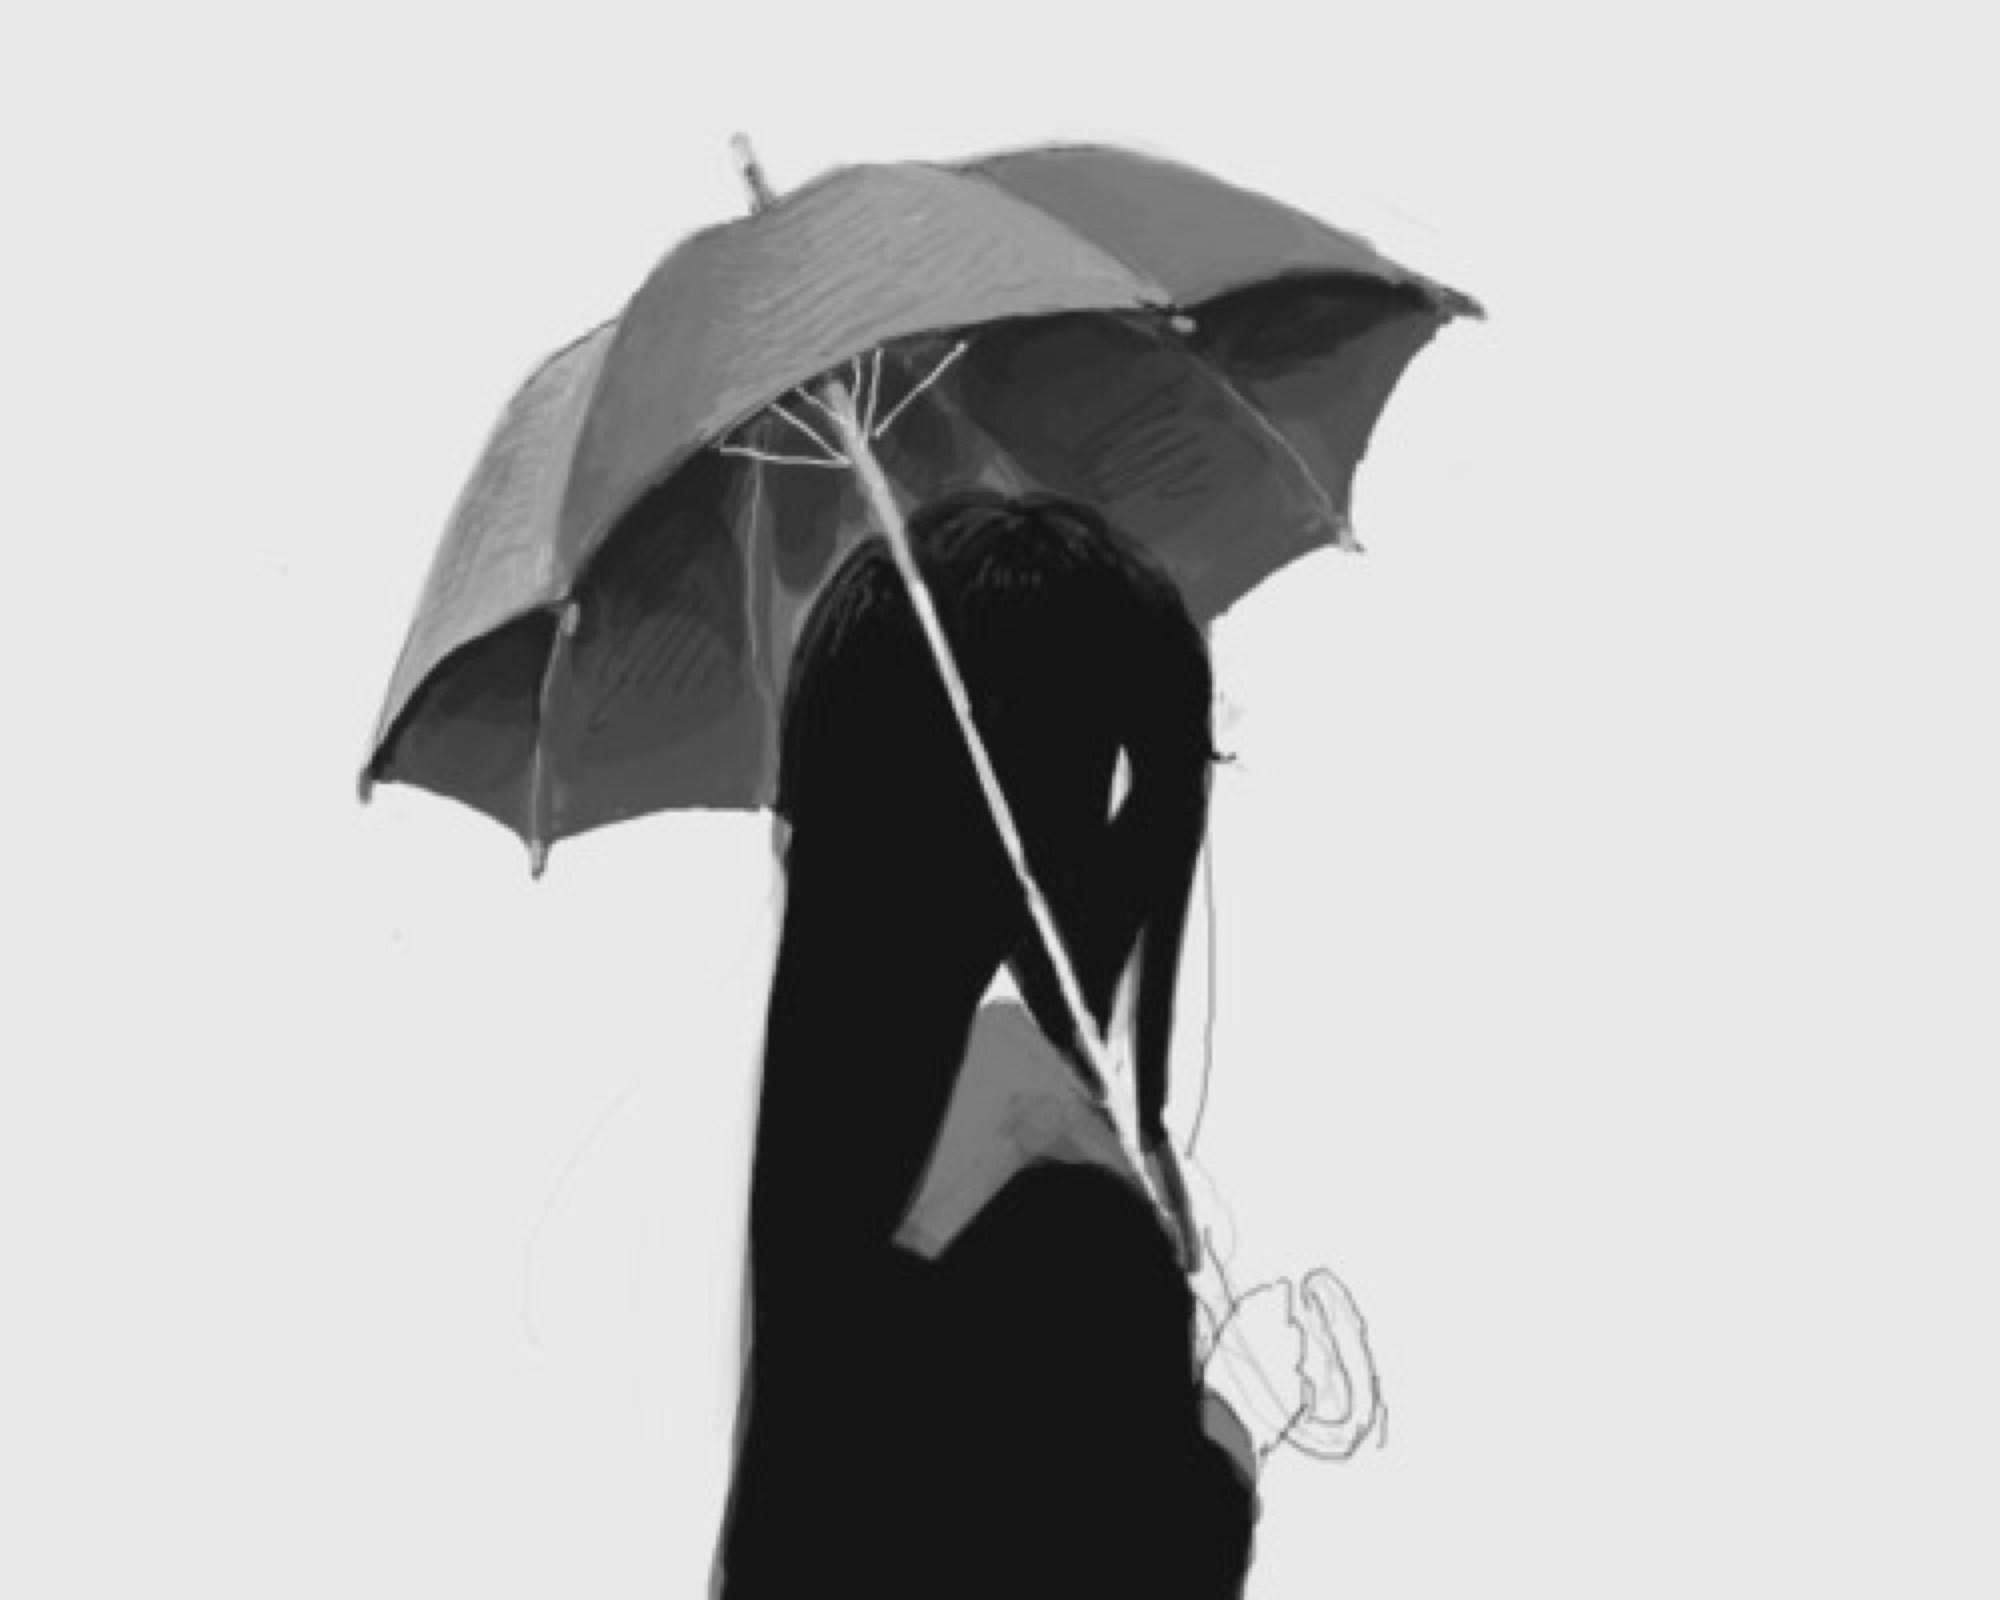 Девочка с зонтиком рисунок